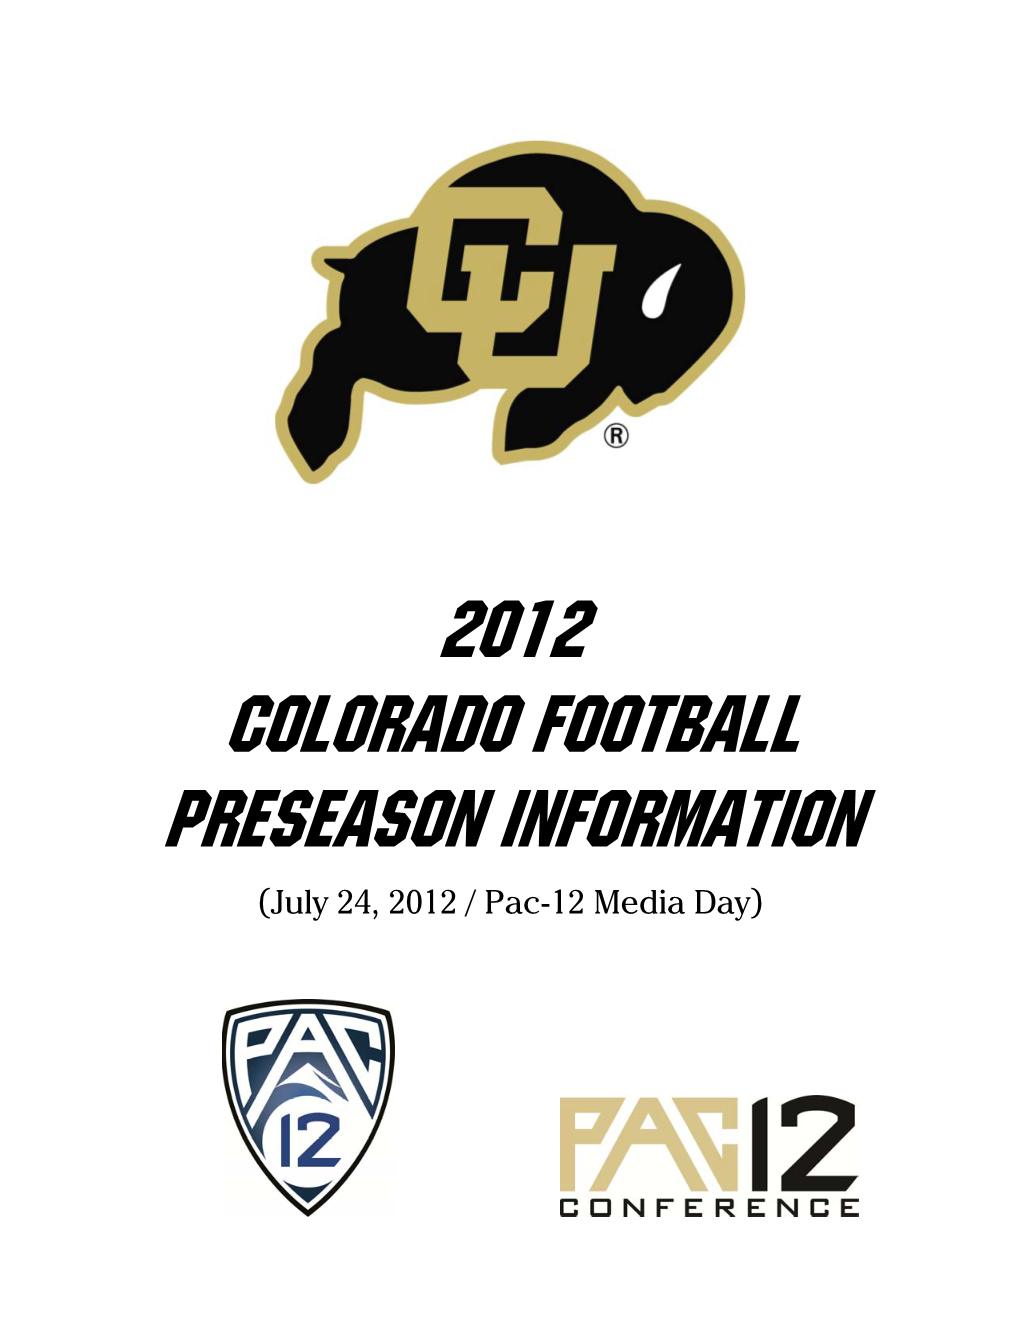 2012 Colorado Football Preseason Information